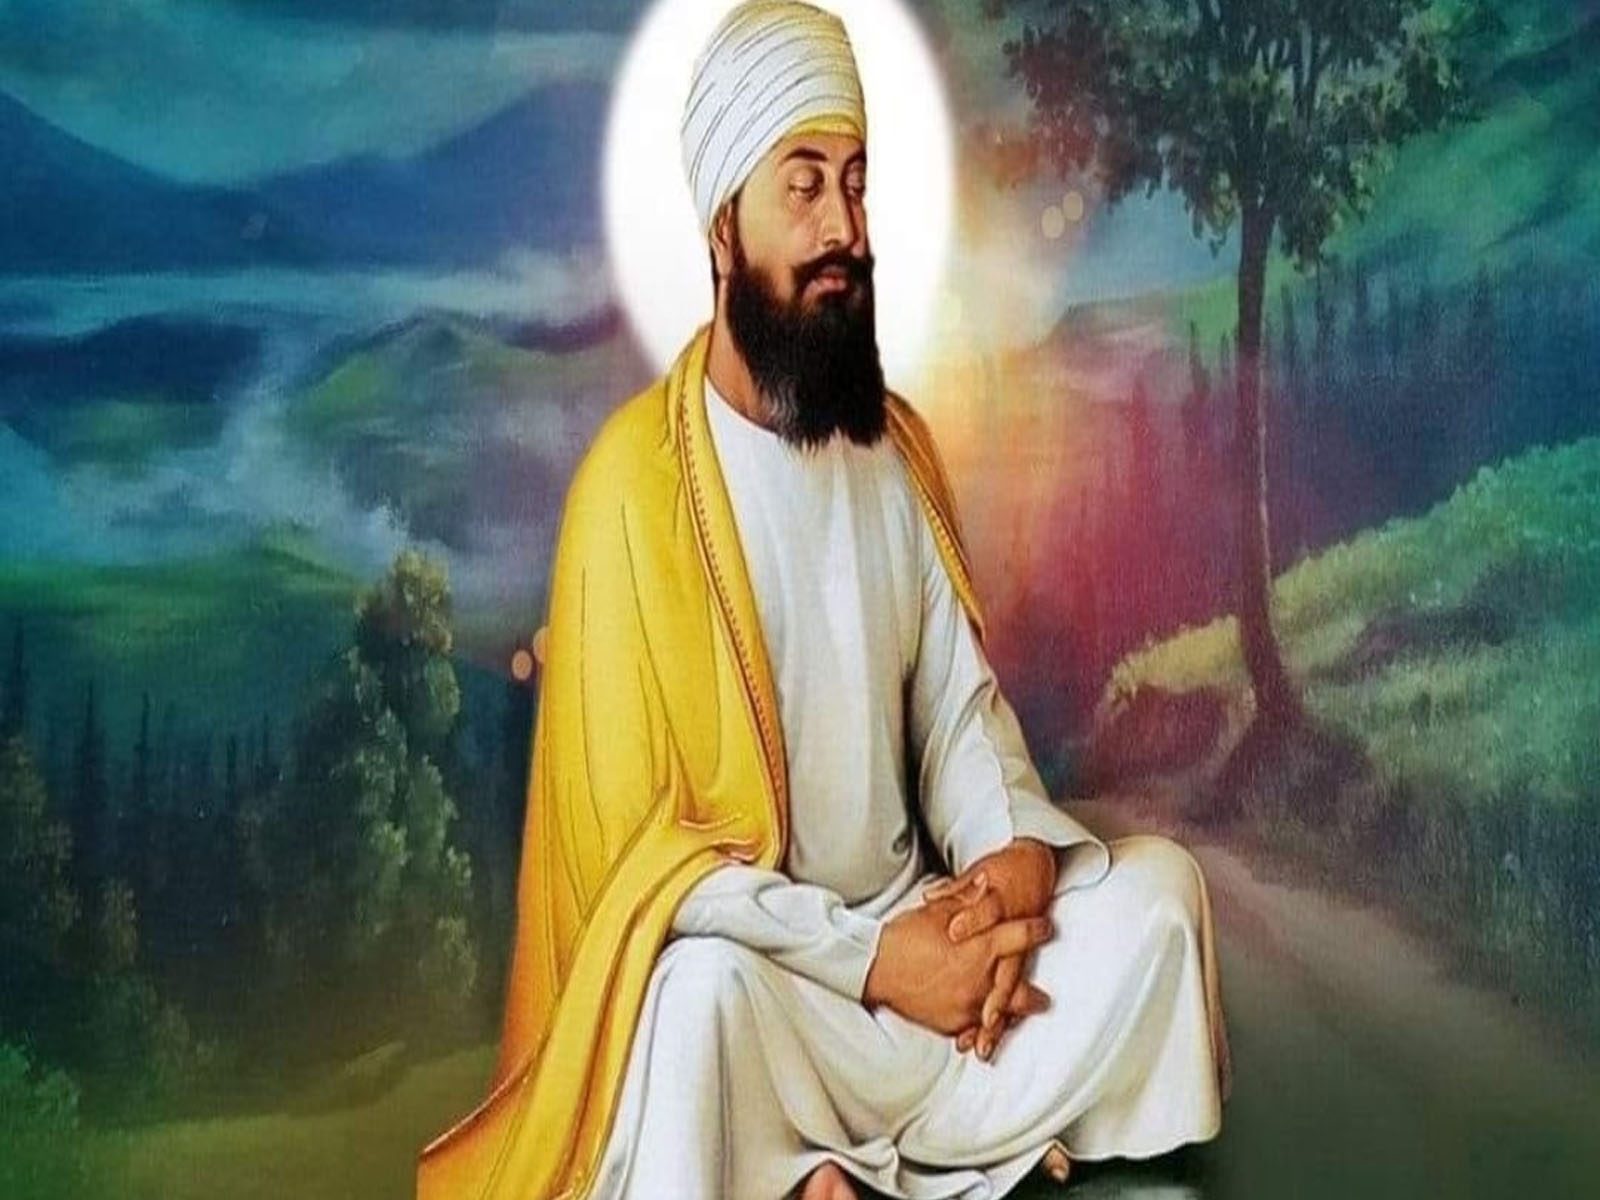  Guru Tegh Bahadur Shaheedi Diwas 2022: ਗੁਰੂ ਤੇਗ ਬਹਾਦਰ ਜੀ ਨੇ ਧਰਮ ਦੀ ਰੱਖਿਆ ਲਈ ਅੱਜ ਦੇ ਦਿਨ ਦਿੱਤੀ ਸੀ ਸ਼ਹਾਦਤ, ਜਾਣੋ ਉਨ੍ਹਾਂ ਦੇ ਅਨਮੋਲ ਵਚਨ